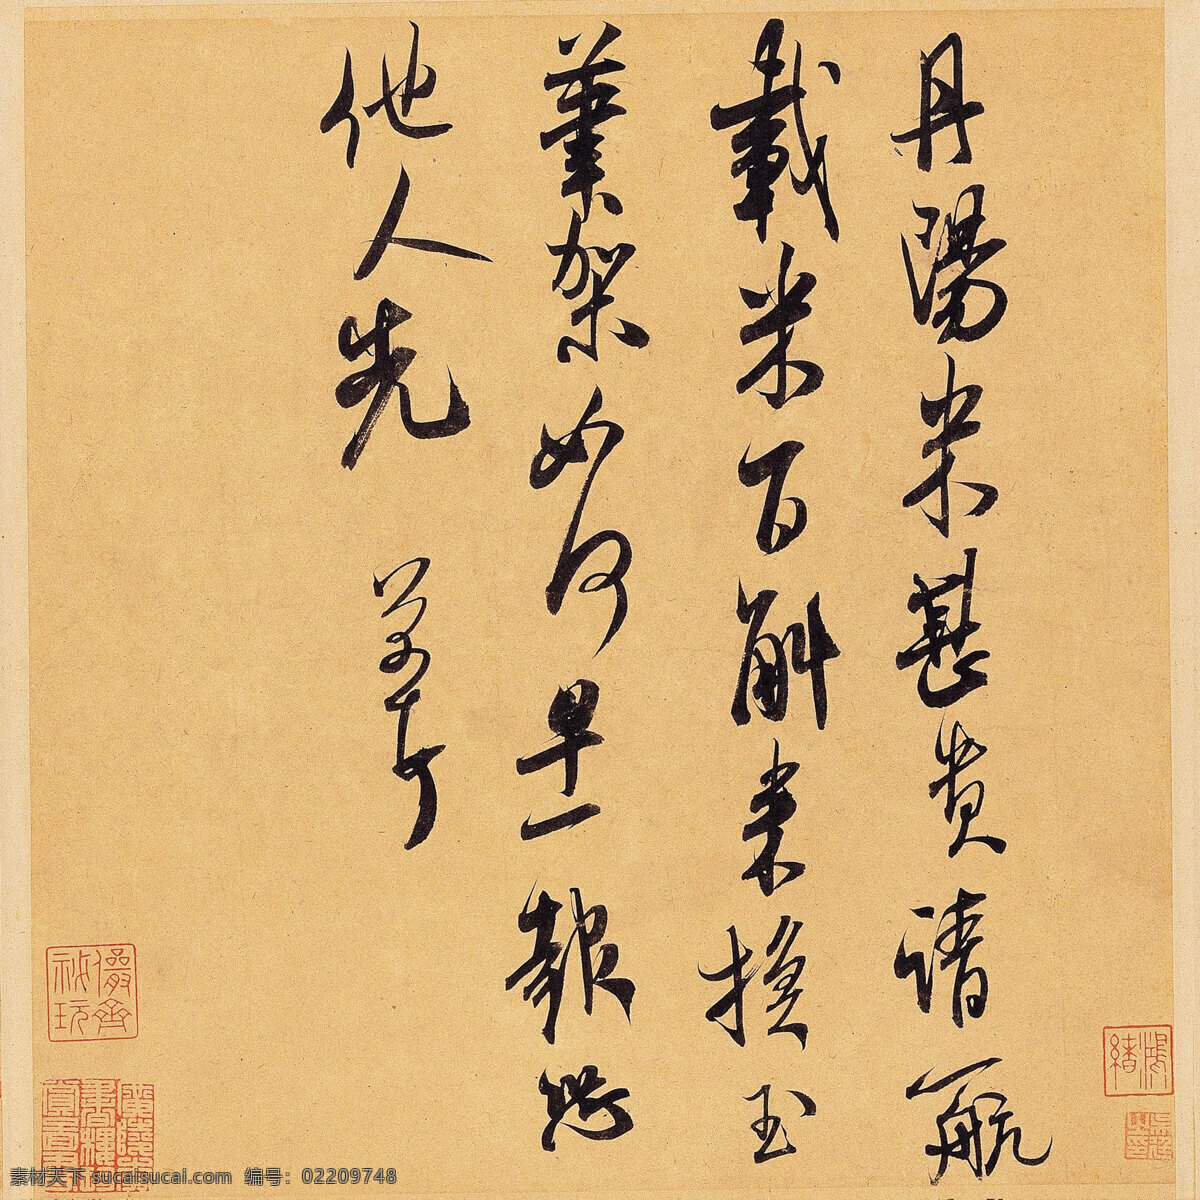 丹阳帖 古字画 传统文化 书法 艺术设计 米芾 字帖 文化艺术